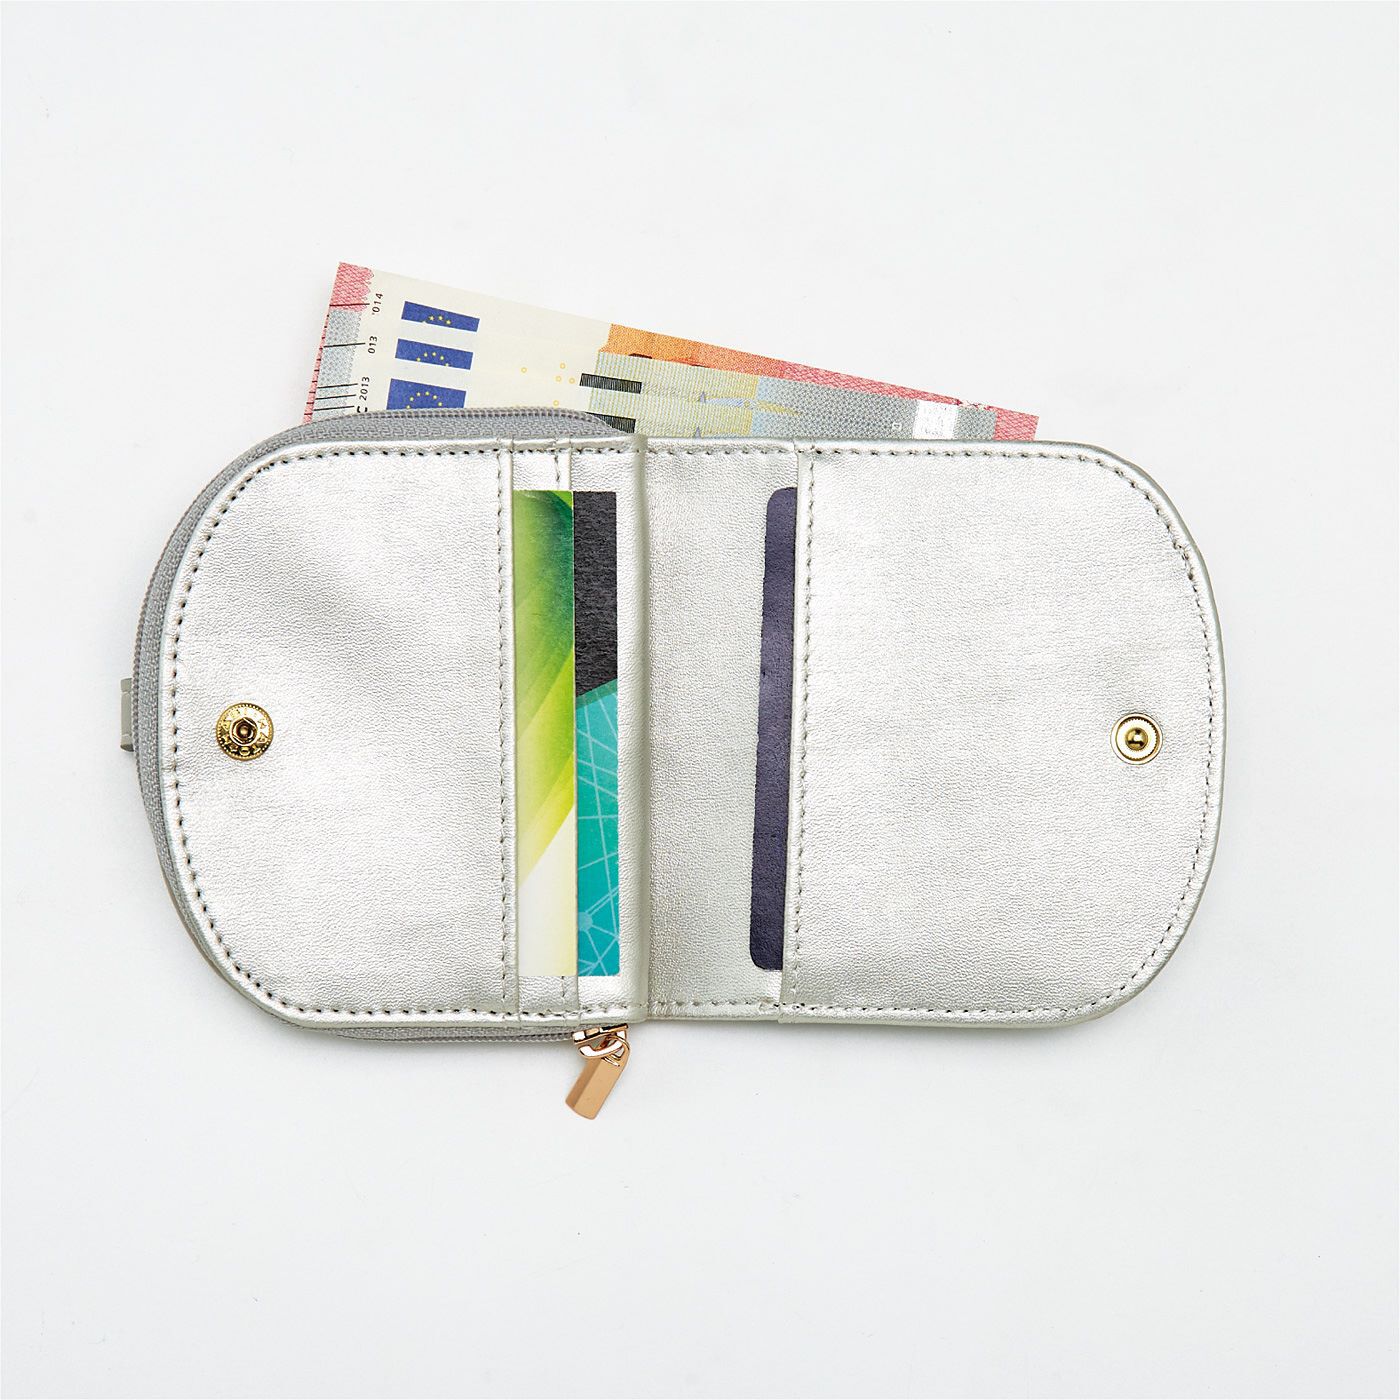 SAANA JA OLLI|サーナ ヤ オッリ　ミニエコバッグと収納ポケット付きの二つ折り財布の会|3つのカードポケット付き。